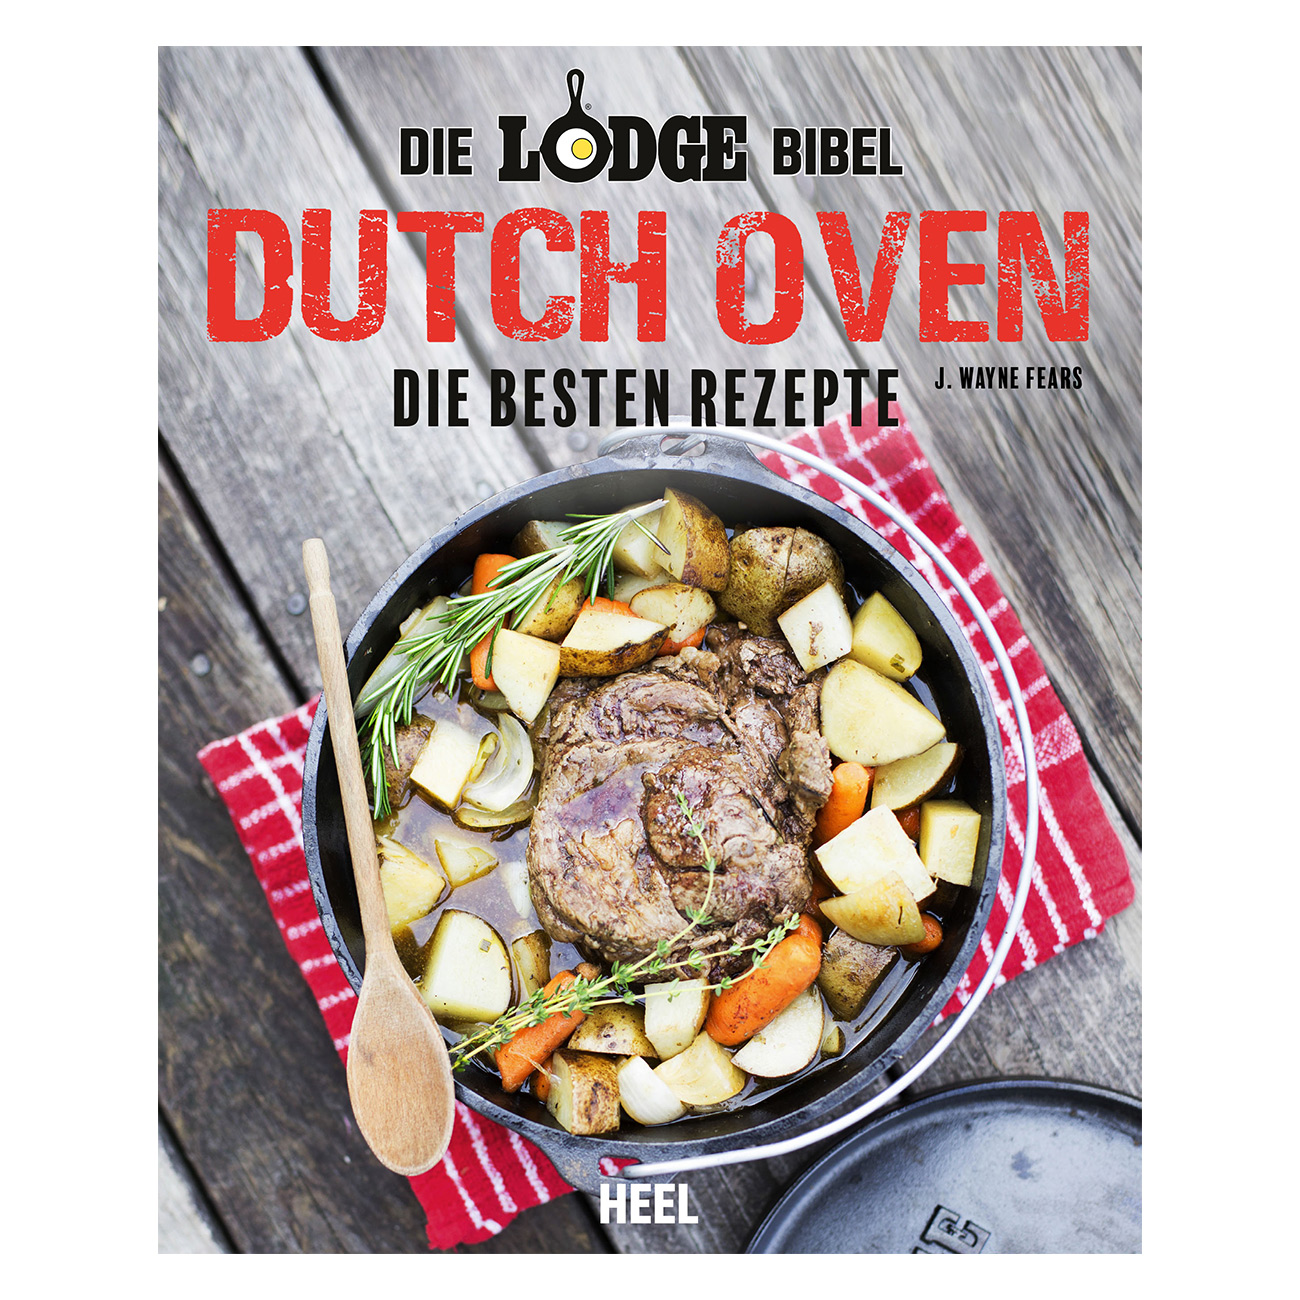 "Die Lodge Bibel - Dutch Oven" Die besten Rezepte